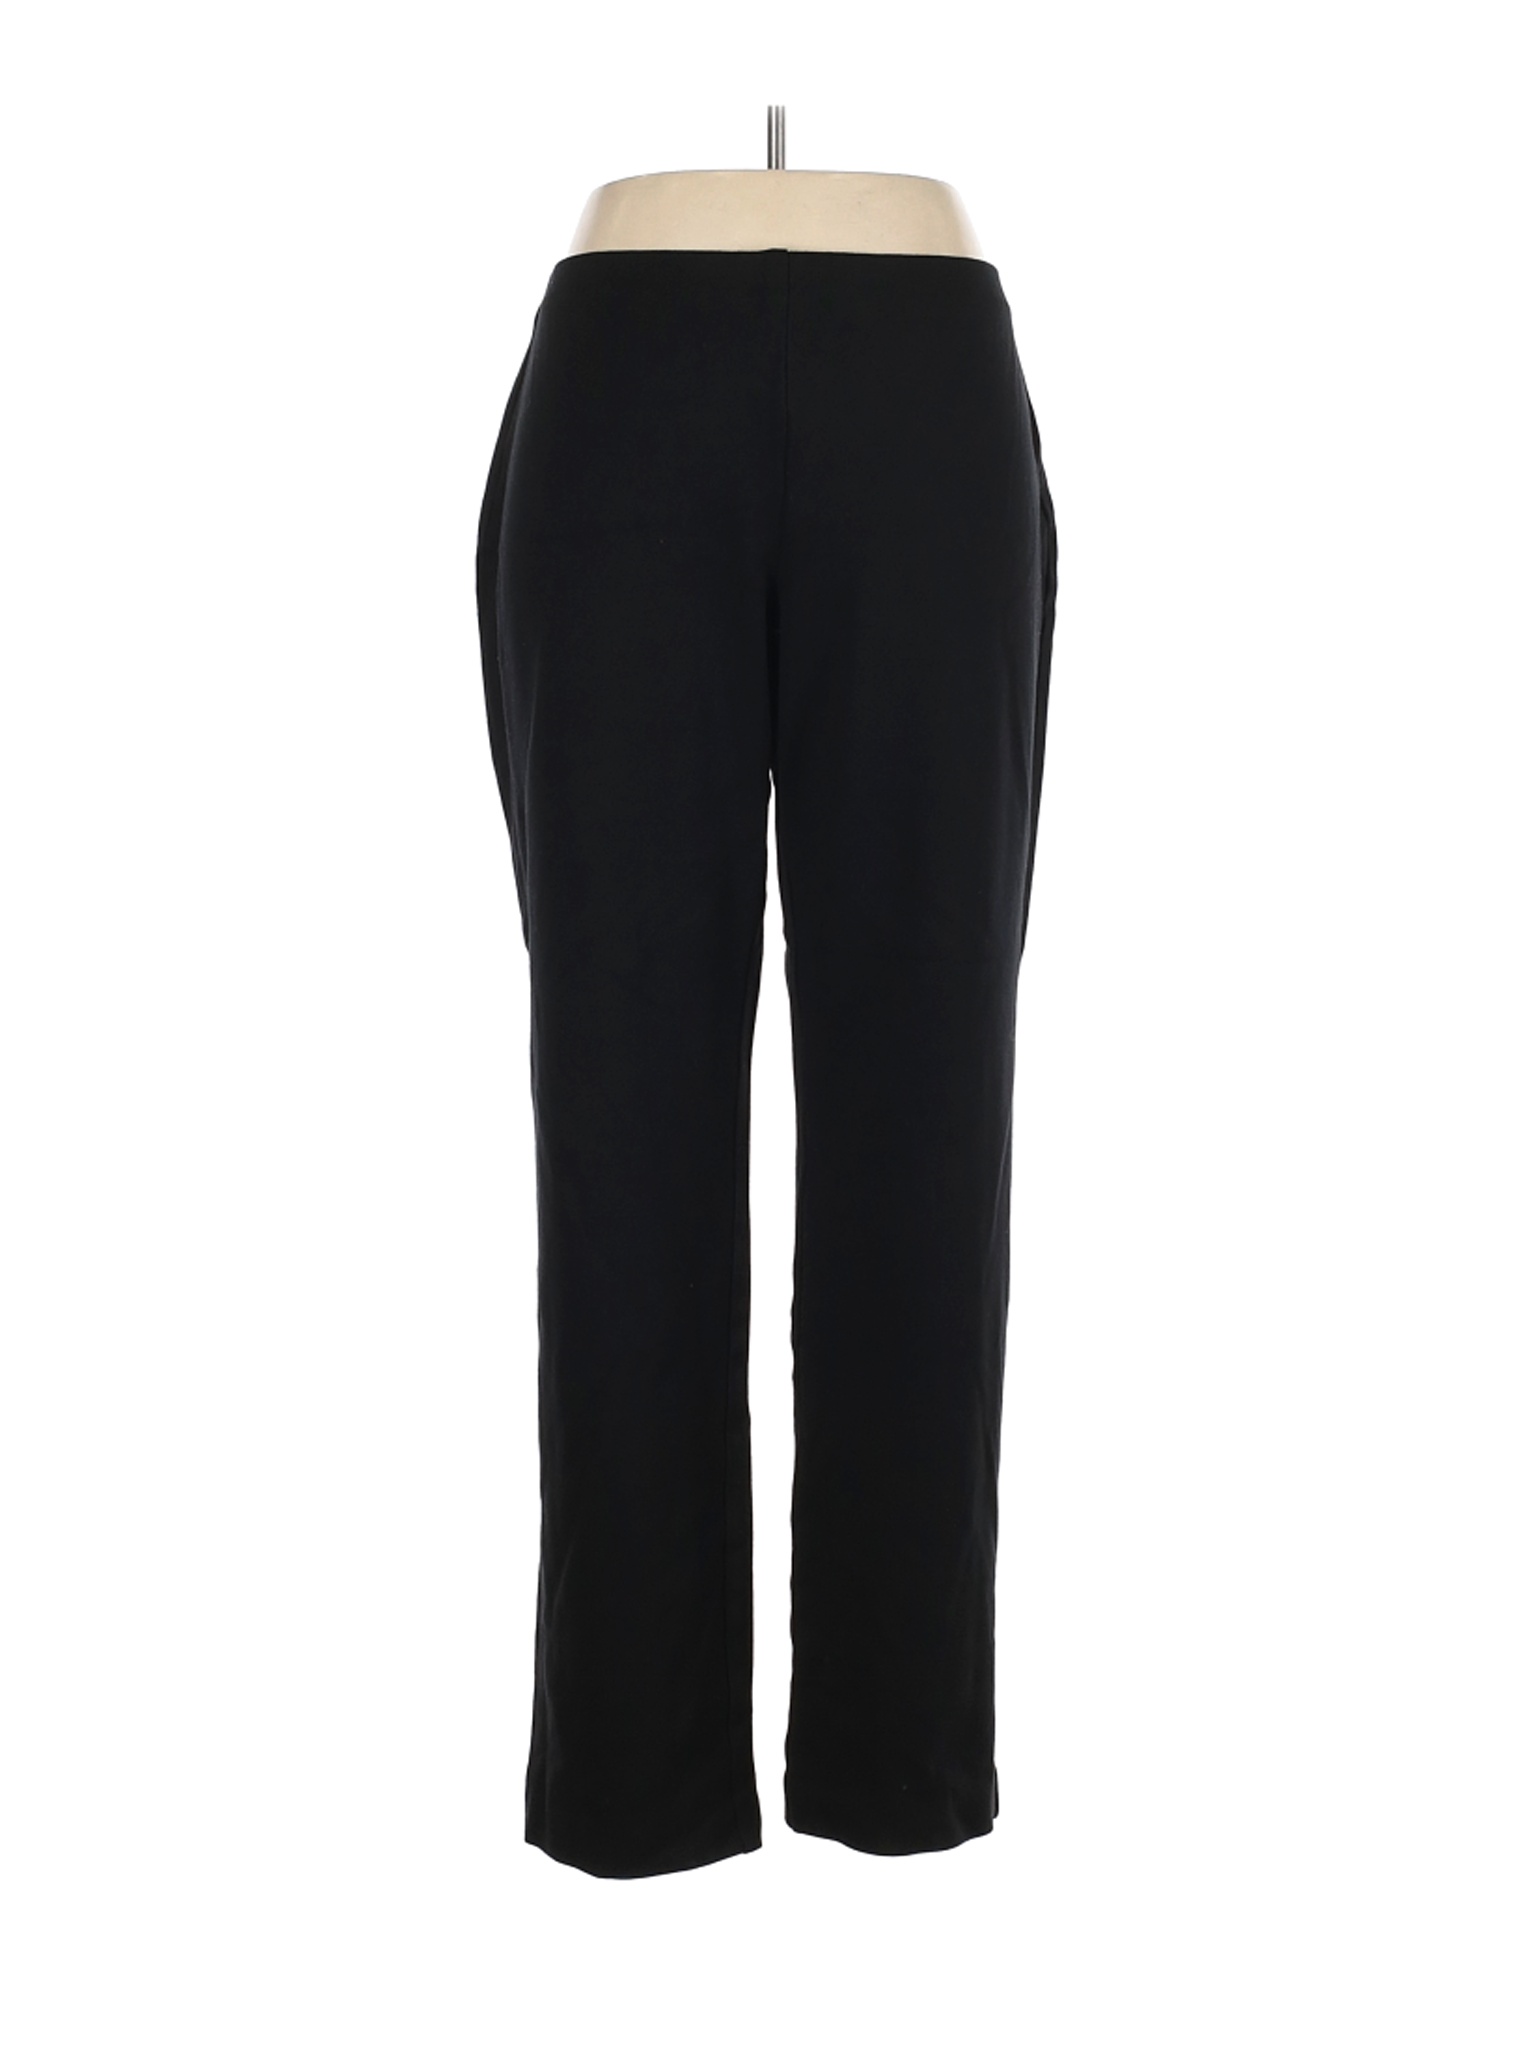 Coldwater Creek Women Black Casual Pants XL | eBay